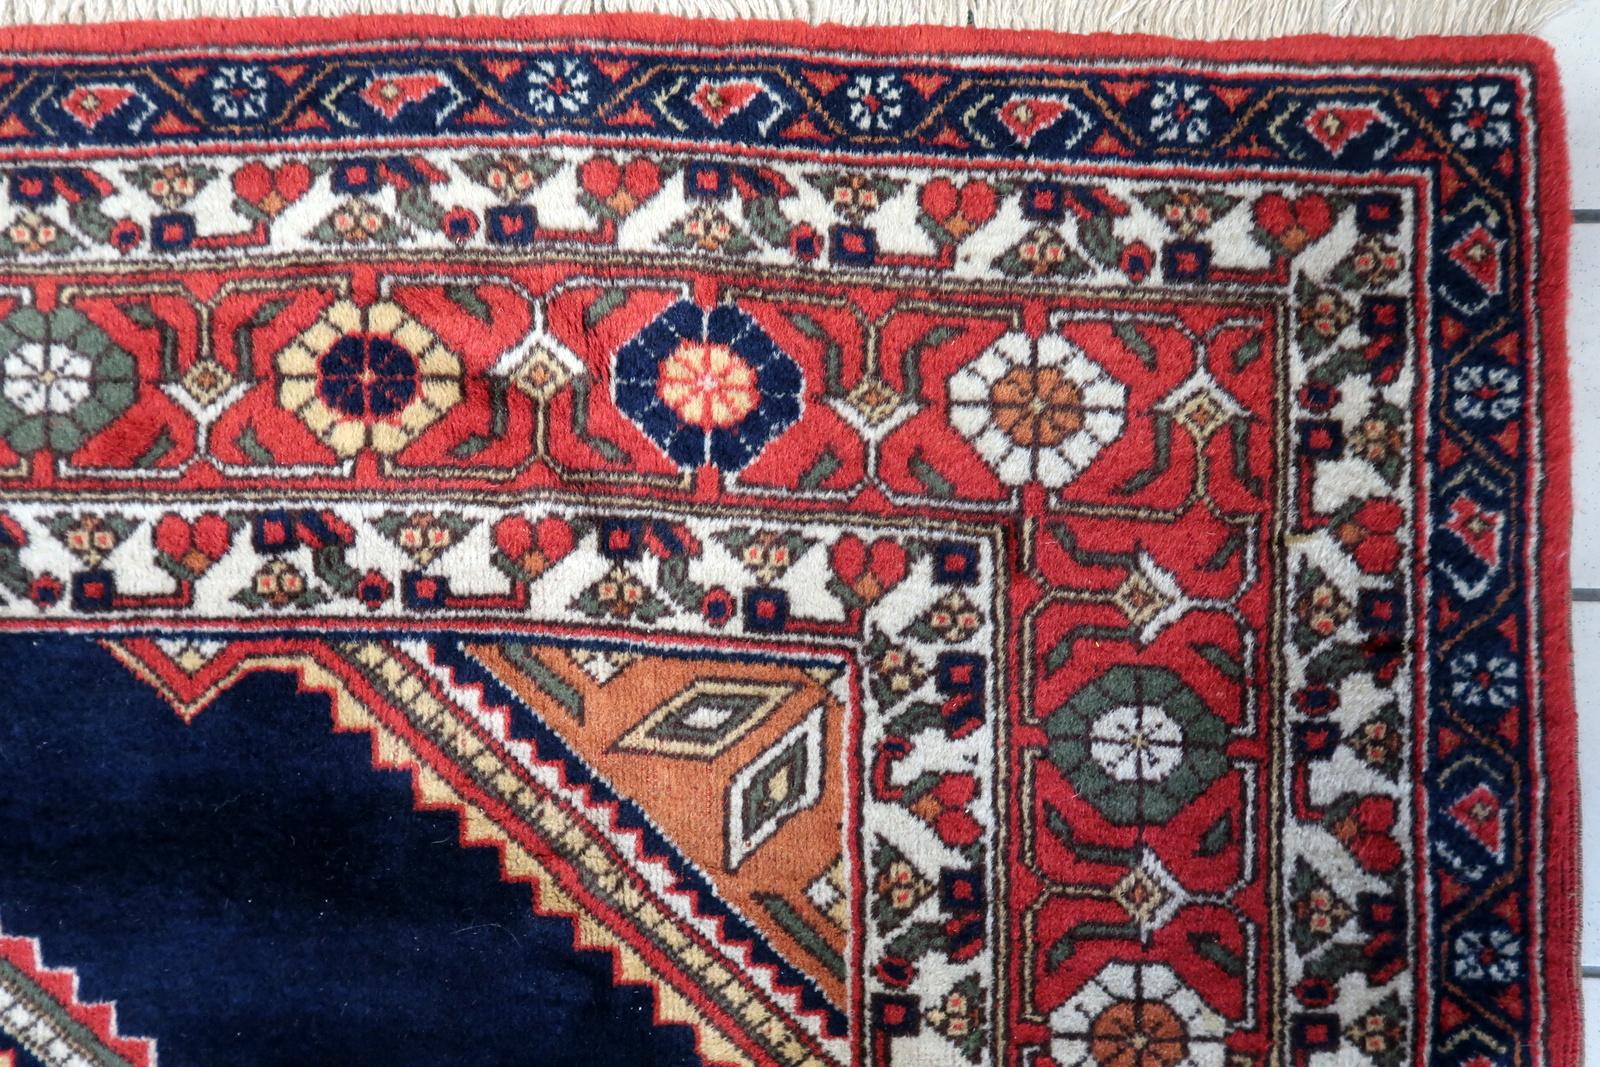 Handgefertigter Afshar-Teppich im persischen Vintage-Stil aus den 1950er Jahren. Dieses exquisite Stück mit den Maßen 198 cm x 302 cm (6,4 Fuß x 9,9 Fuß) vermittelt ein Gefühl von Ehrfurcht und Tradition.

Beschreibung des Produkts:
Design/One